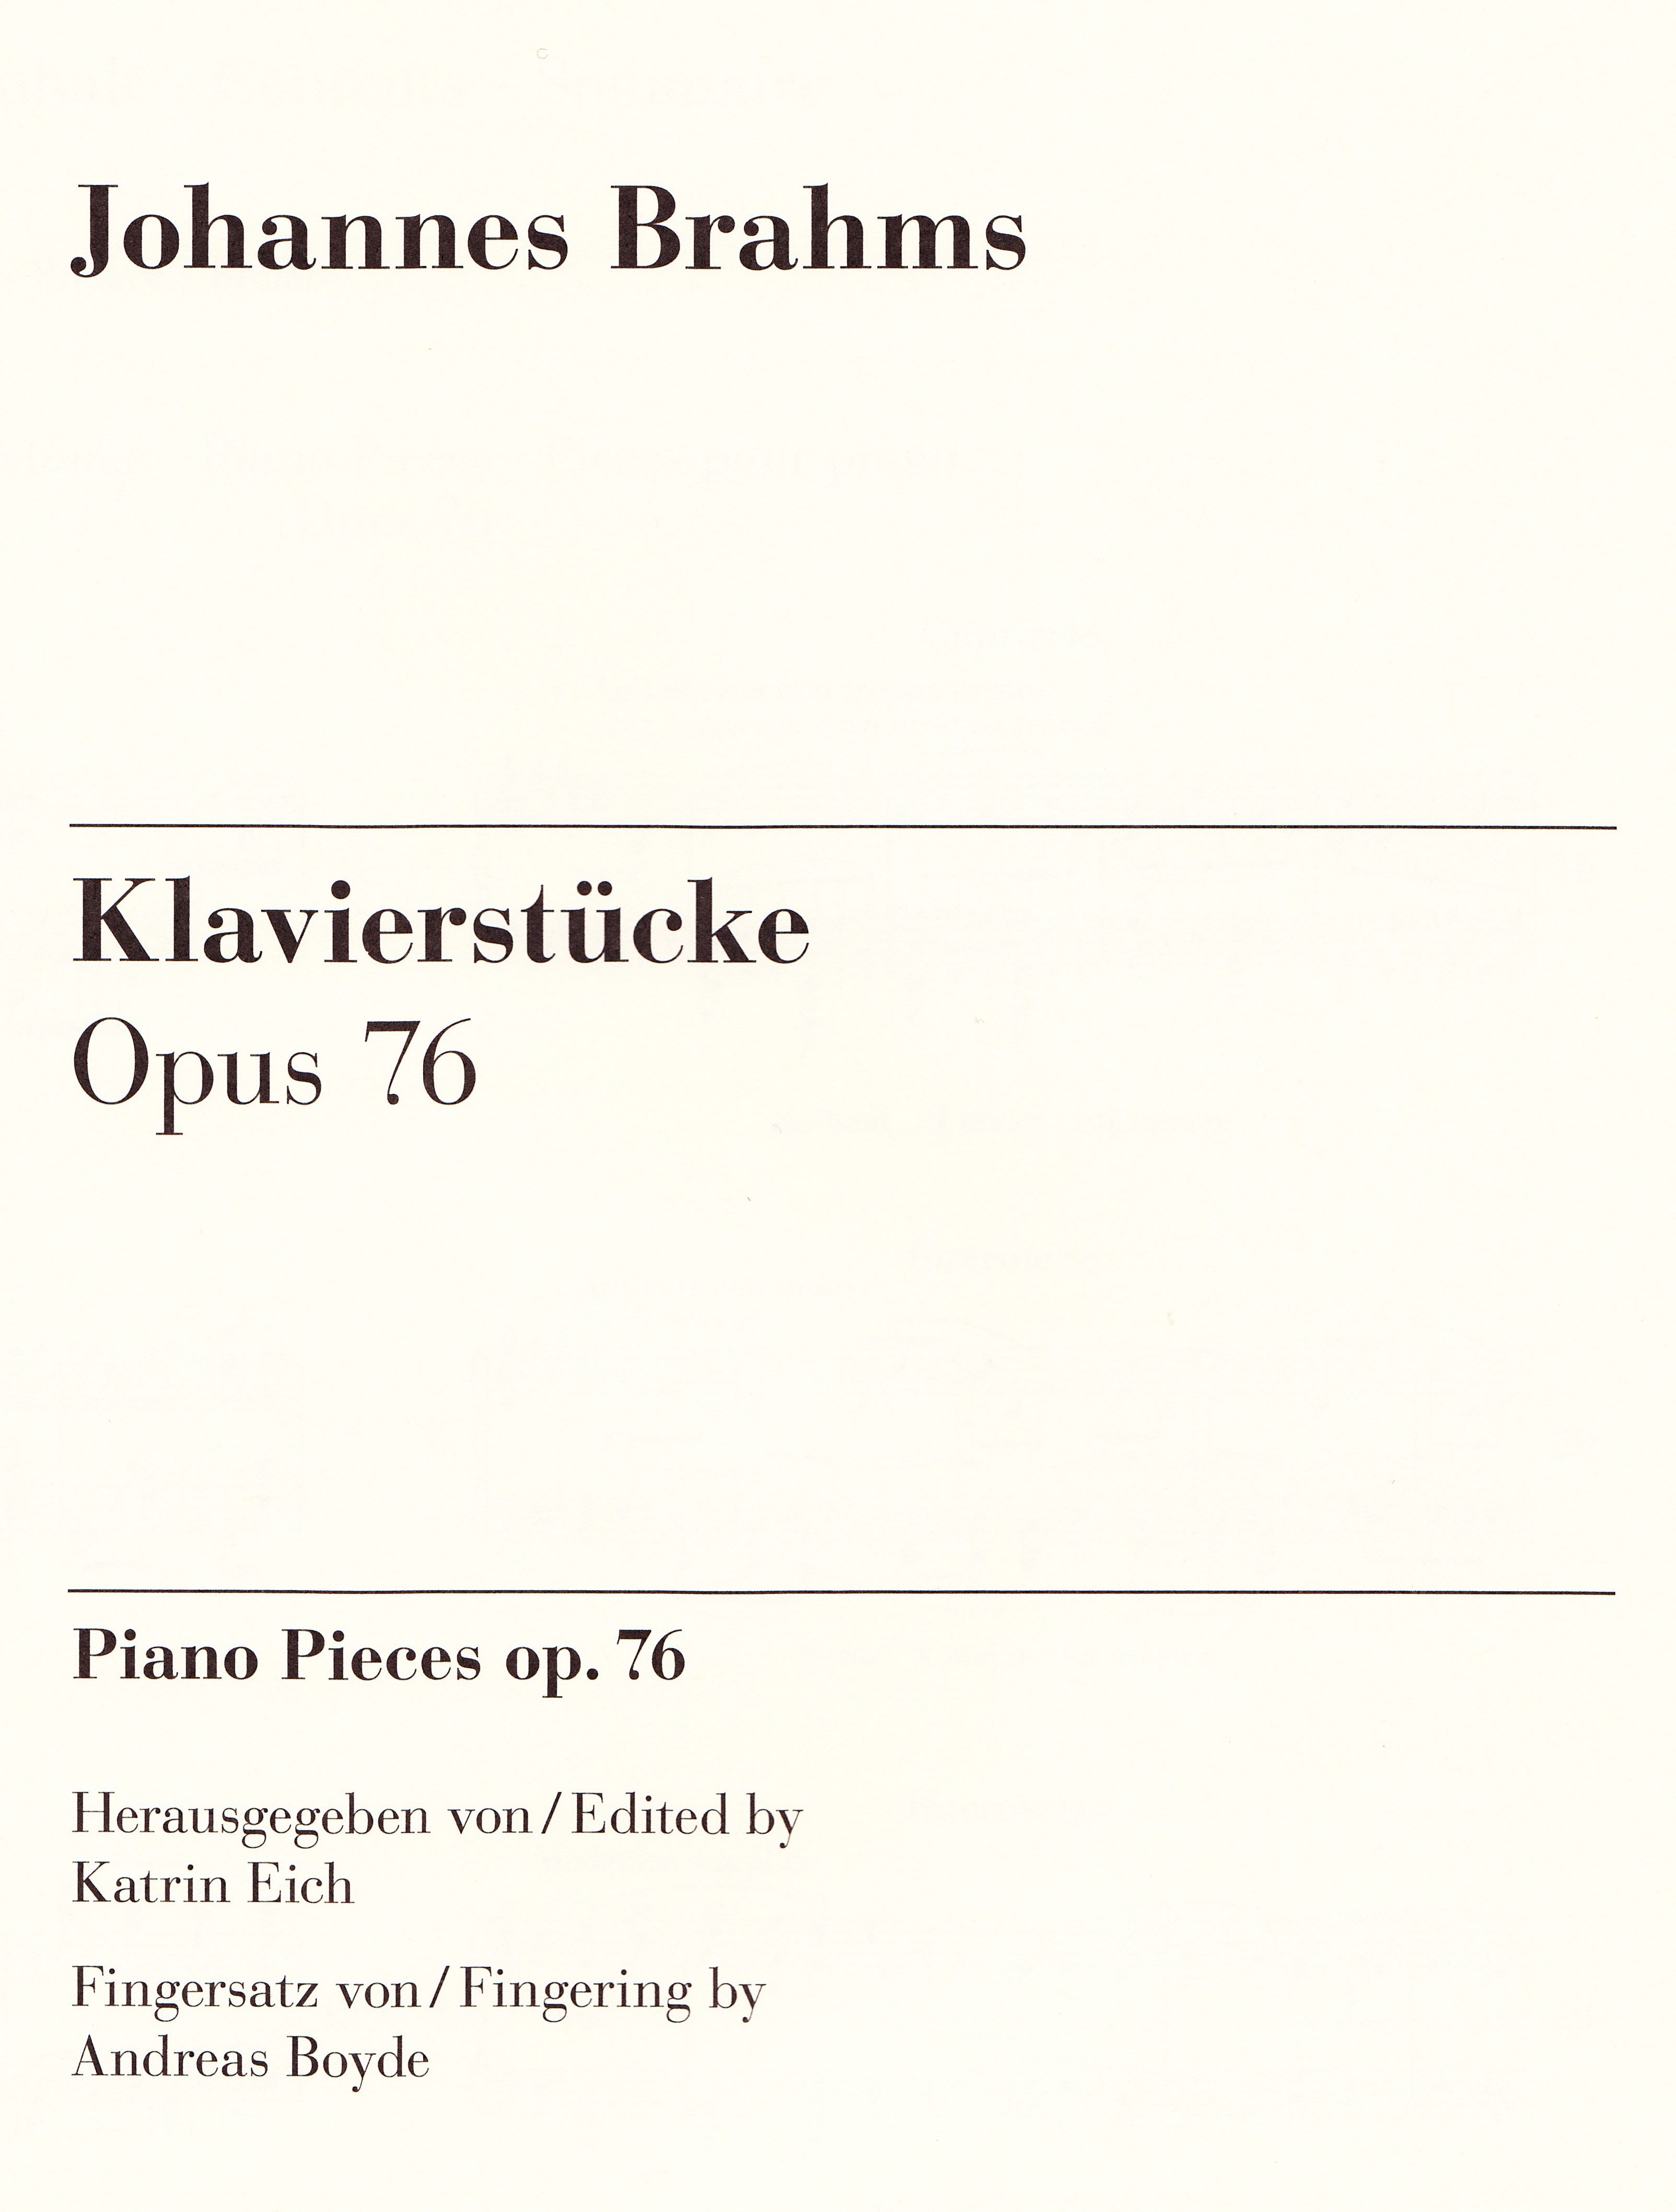 Henle Brahms Op. 76 [2]